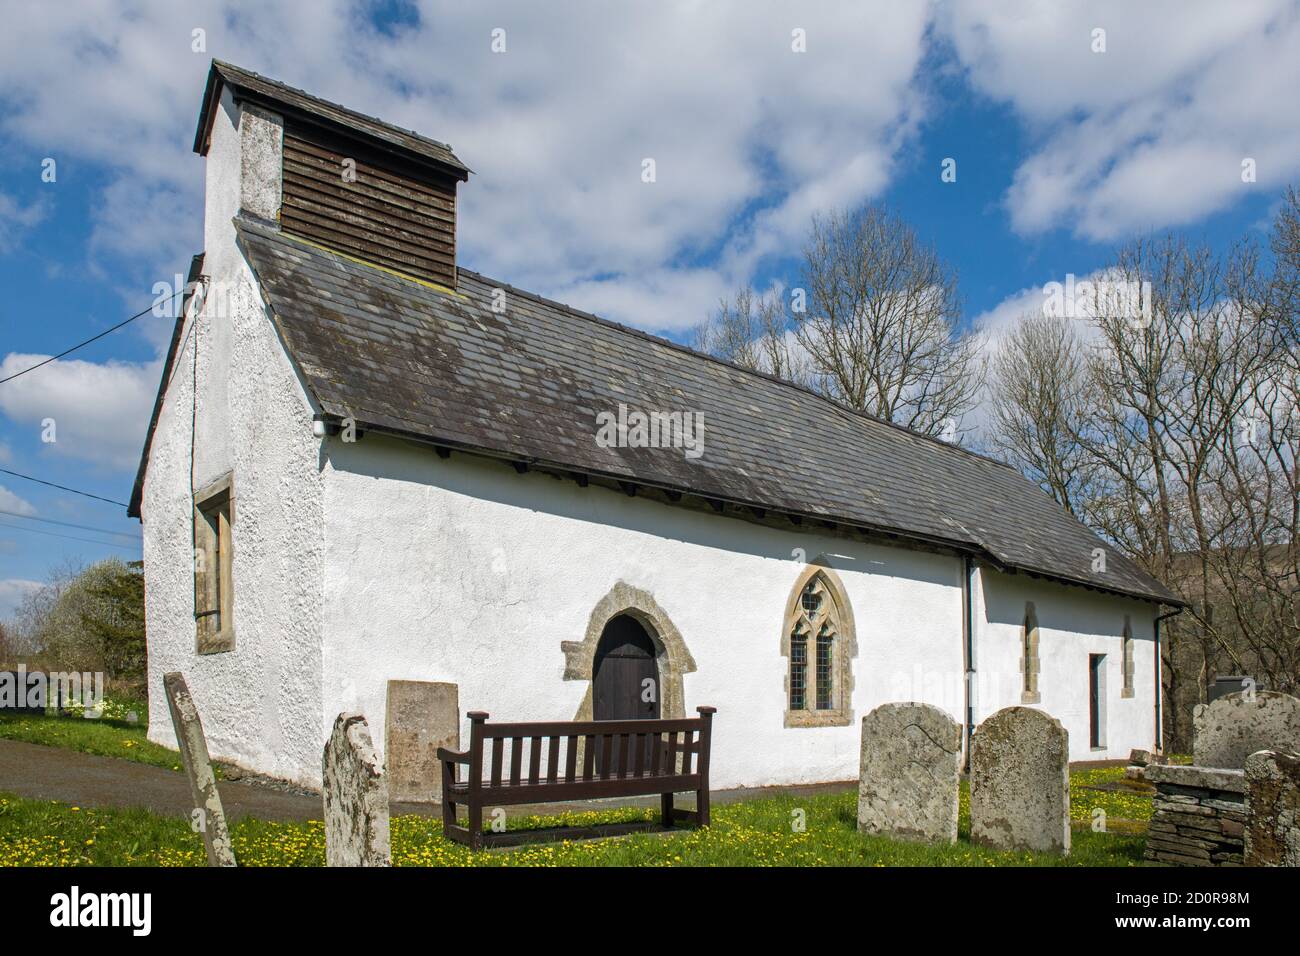 La chiesa di St Davids nel villaggio rurale di Cegrina nella vecchia contea di Radnorshire, ora sommersa nella contea più grande di Powys. Foto Stock